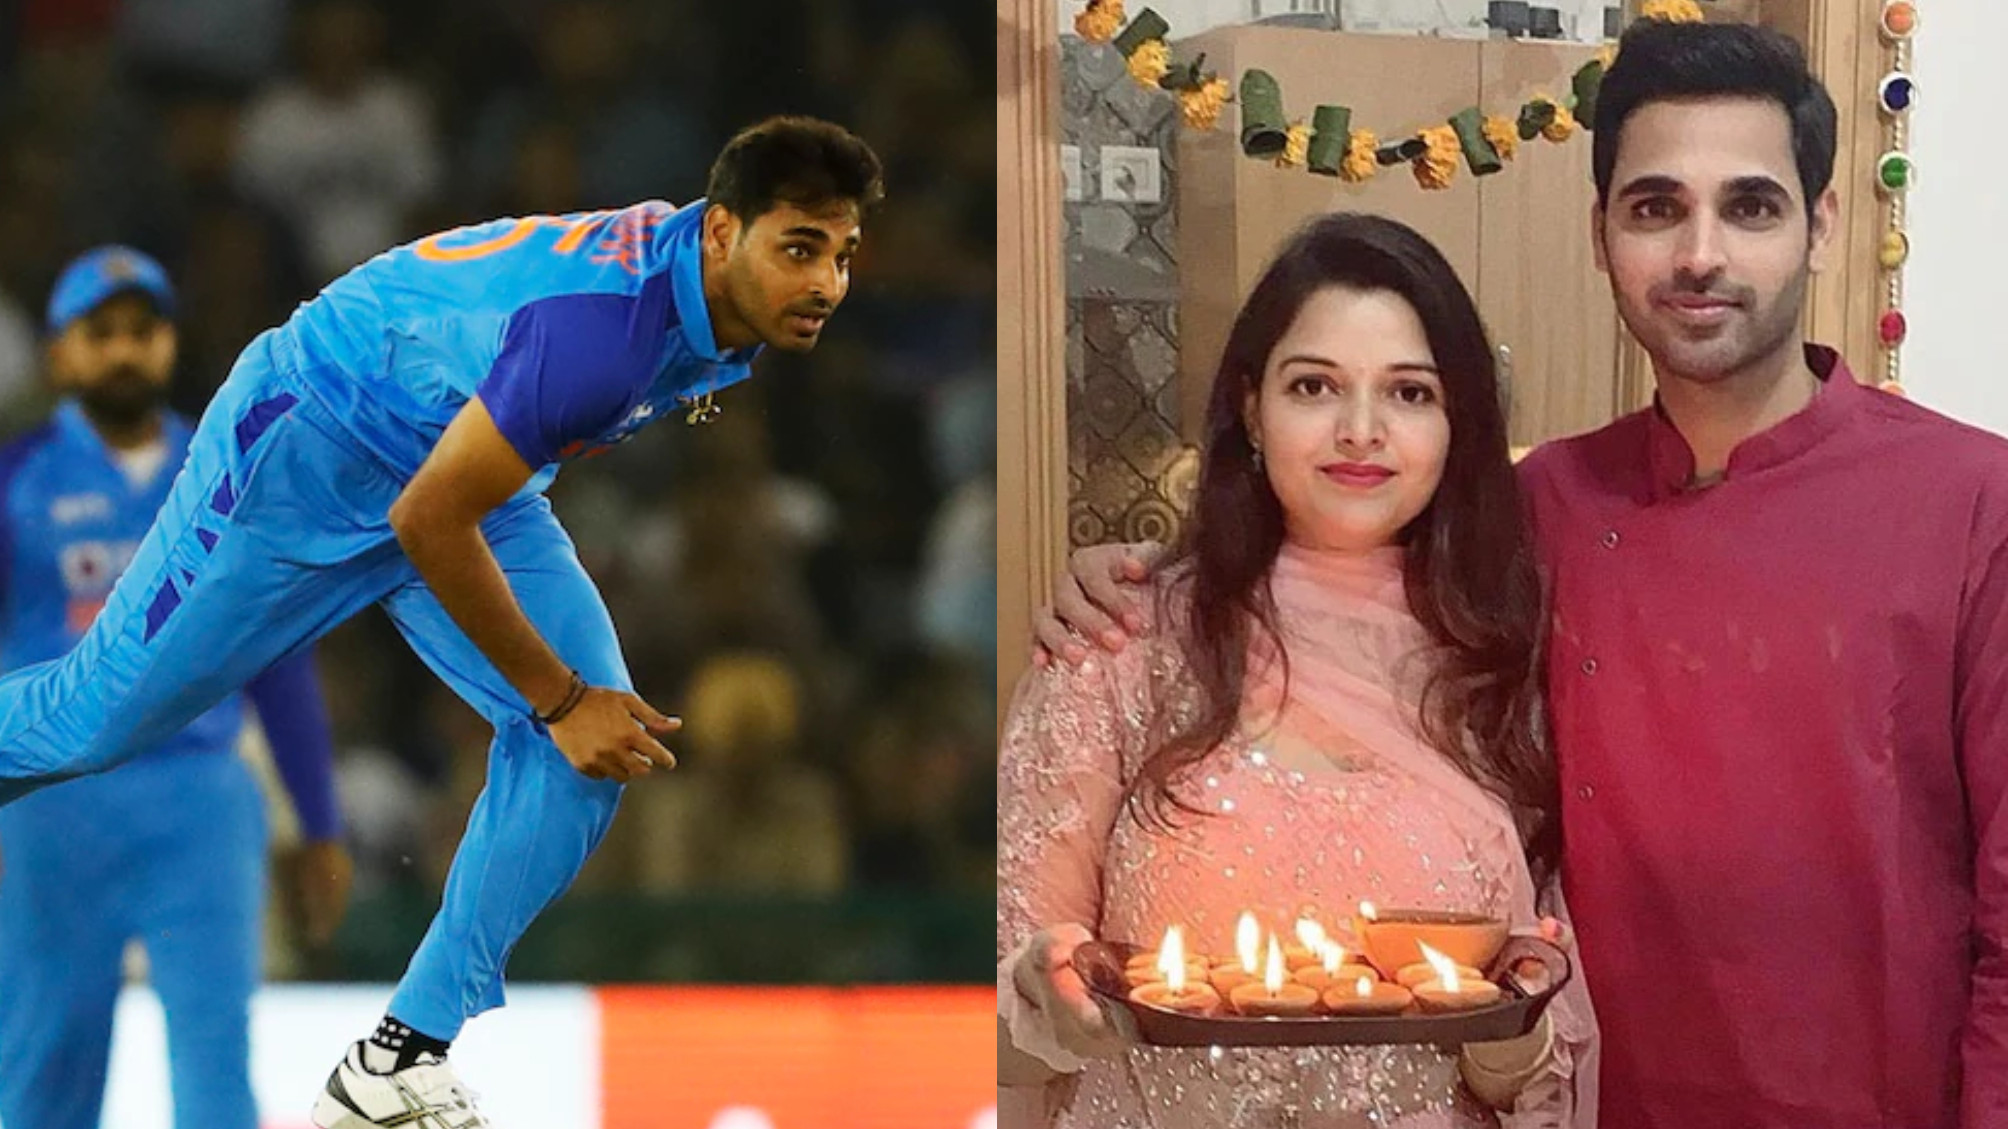 IND v AUS 2022: ‘Spend time making yourself better’- Bhuvneshwar Kumar’s wife Nupur slams trolls post 1st T20I